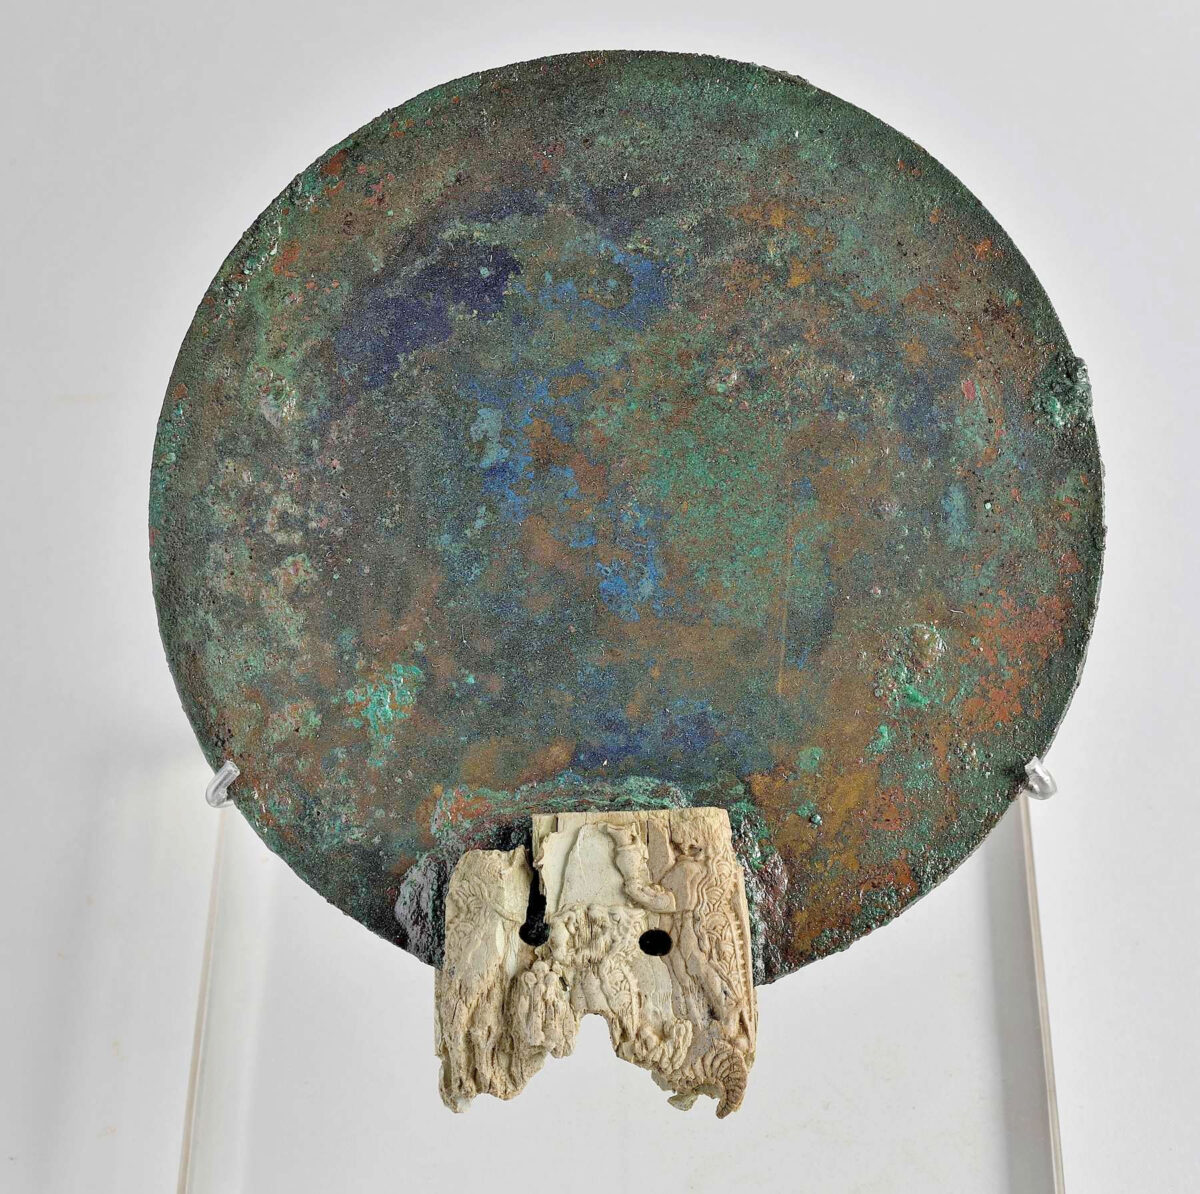 Χάλκινος καθρέφτης με οστέινη λαβή κοσμημένη με δαιμονικά όντα. Παγκαλοχώρι Ρεθύμνου, 1380-1300 π.Χ. Πηγή εικόνας: ΥΠΠΟ.